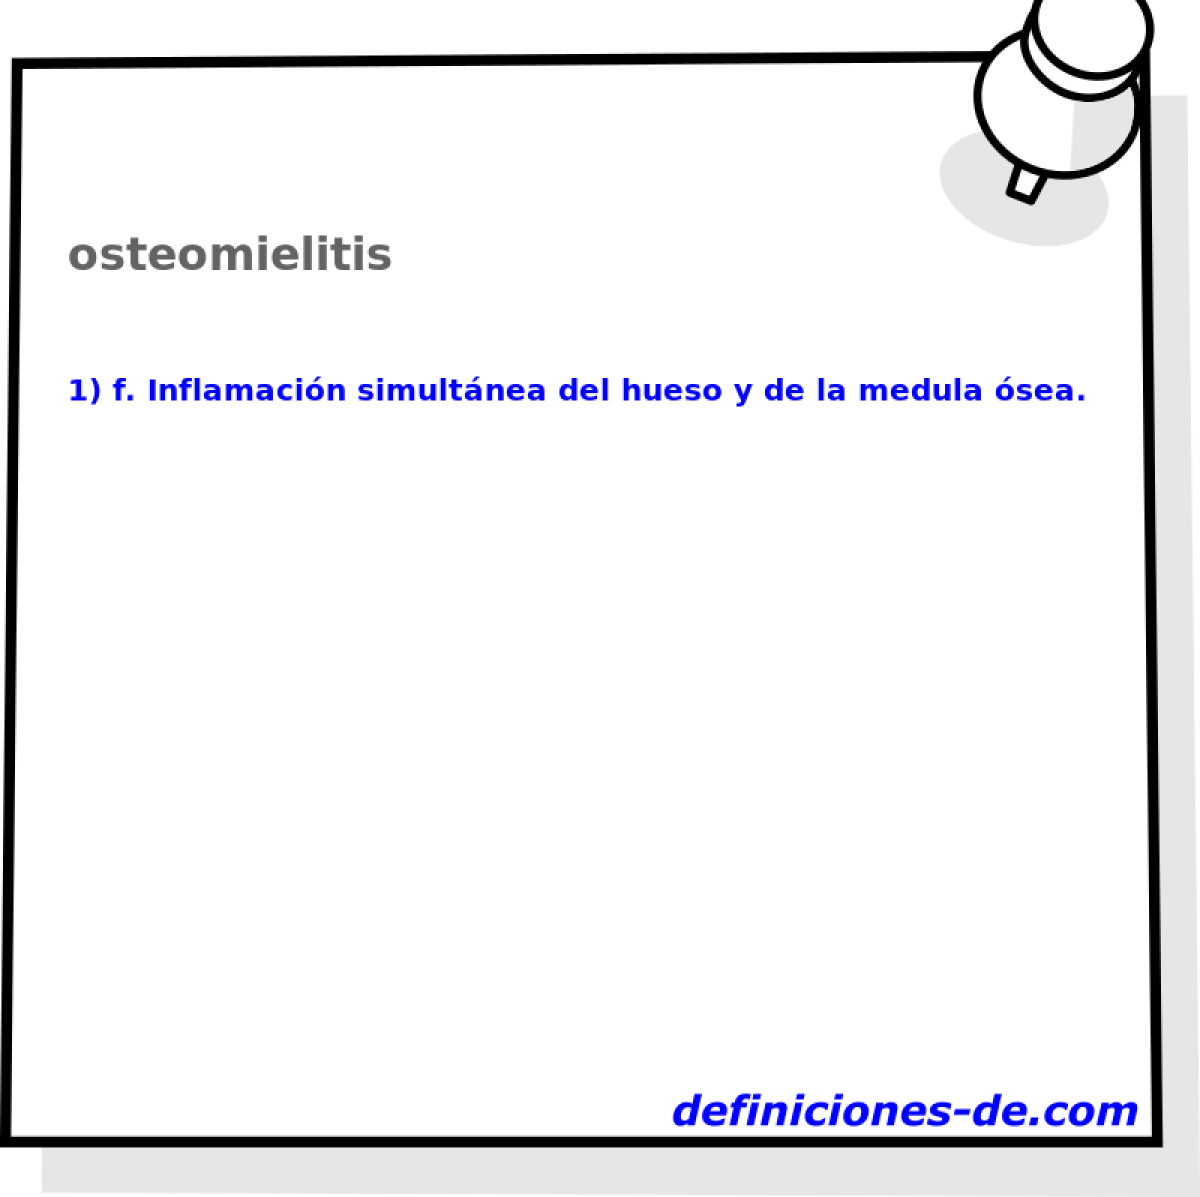 osteomielitis 